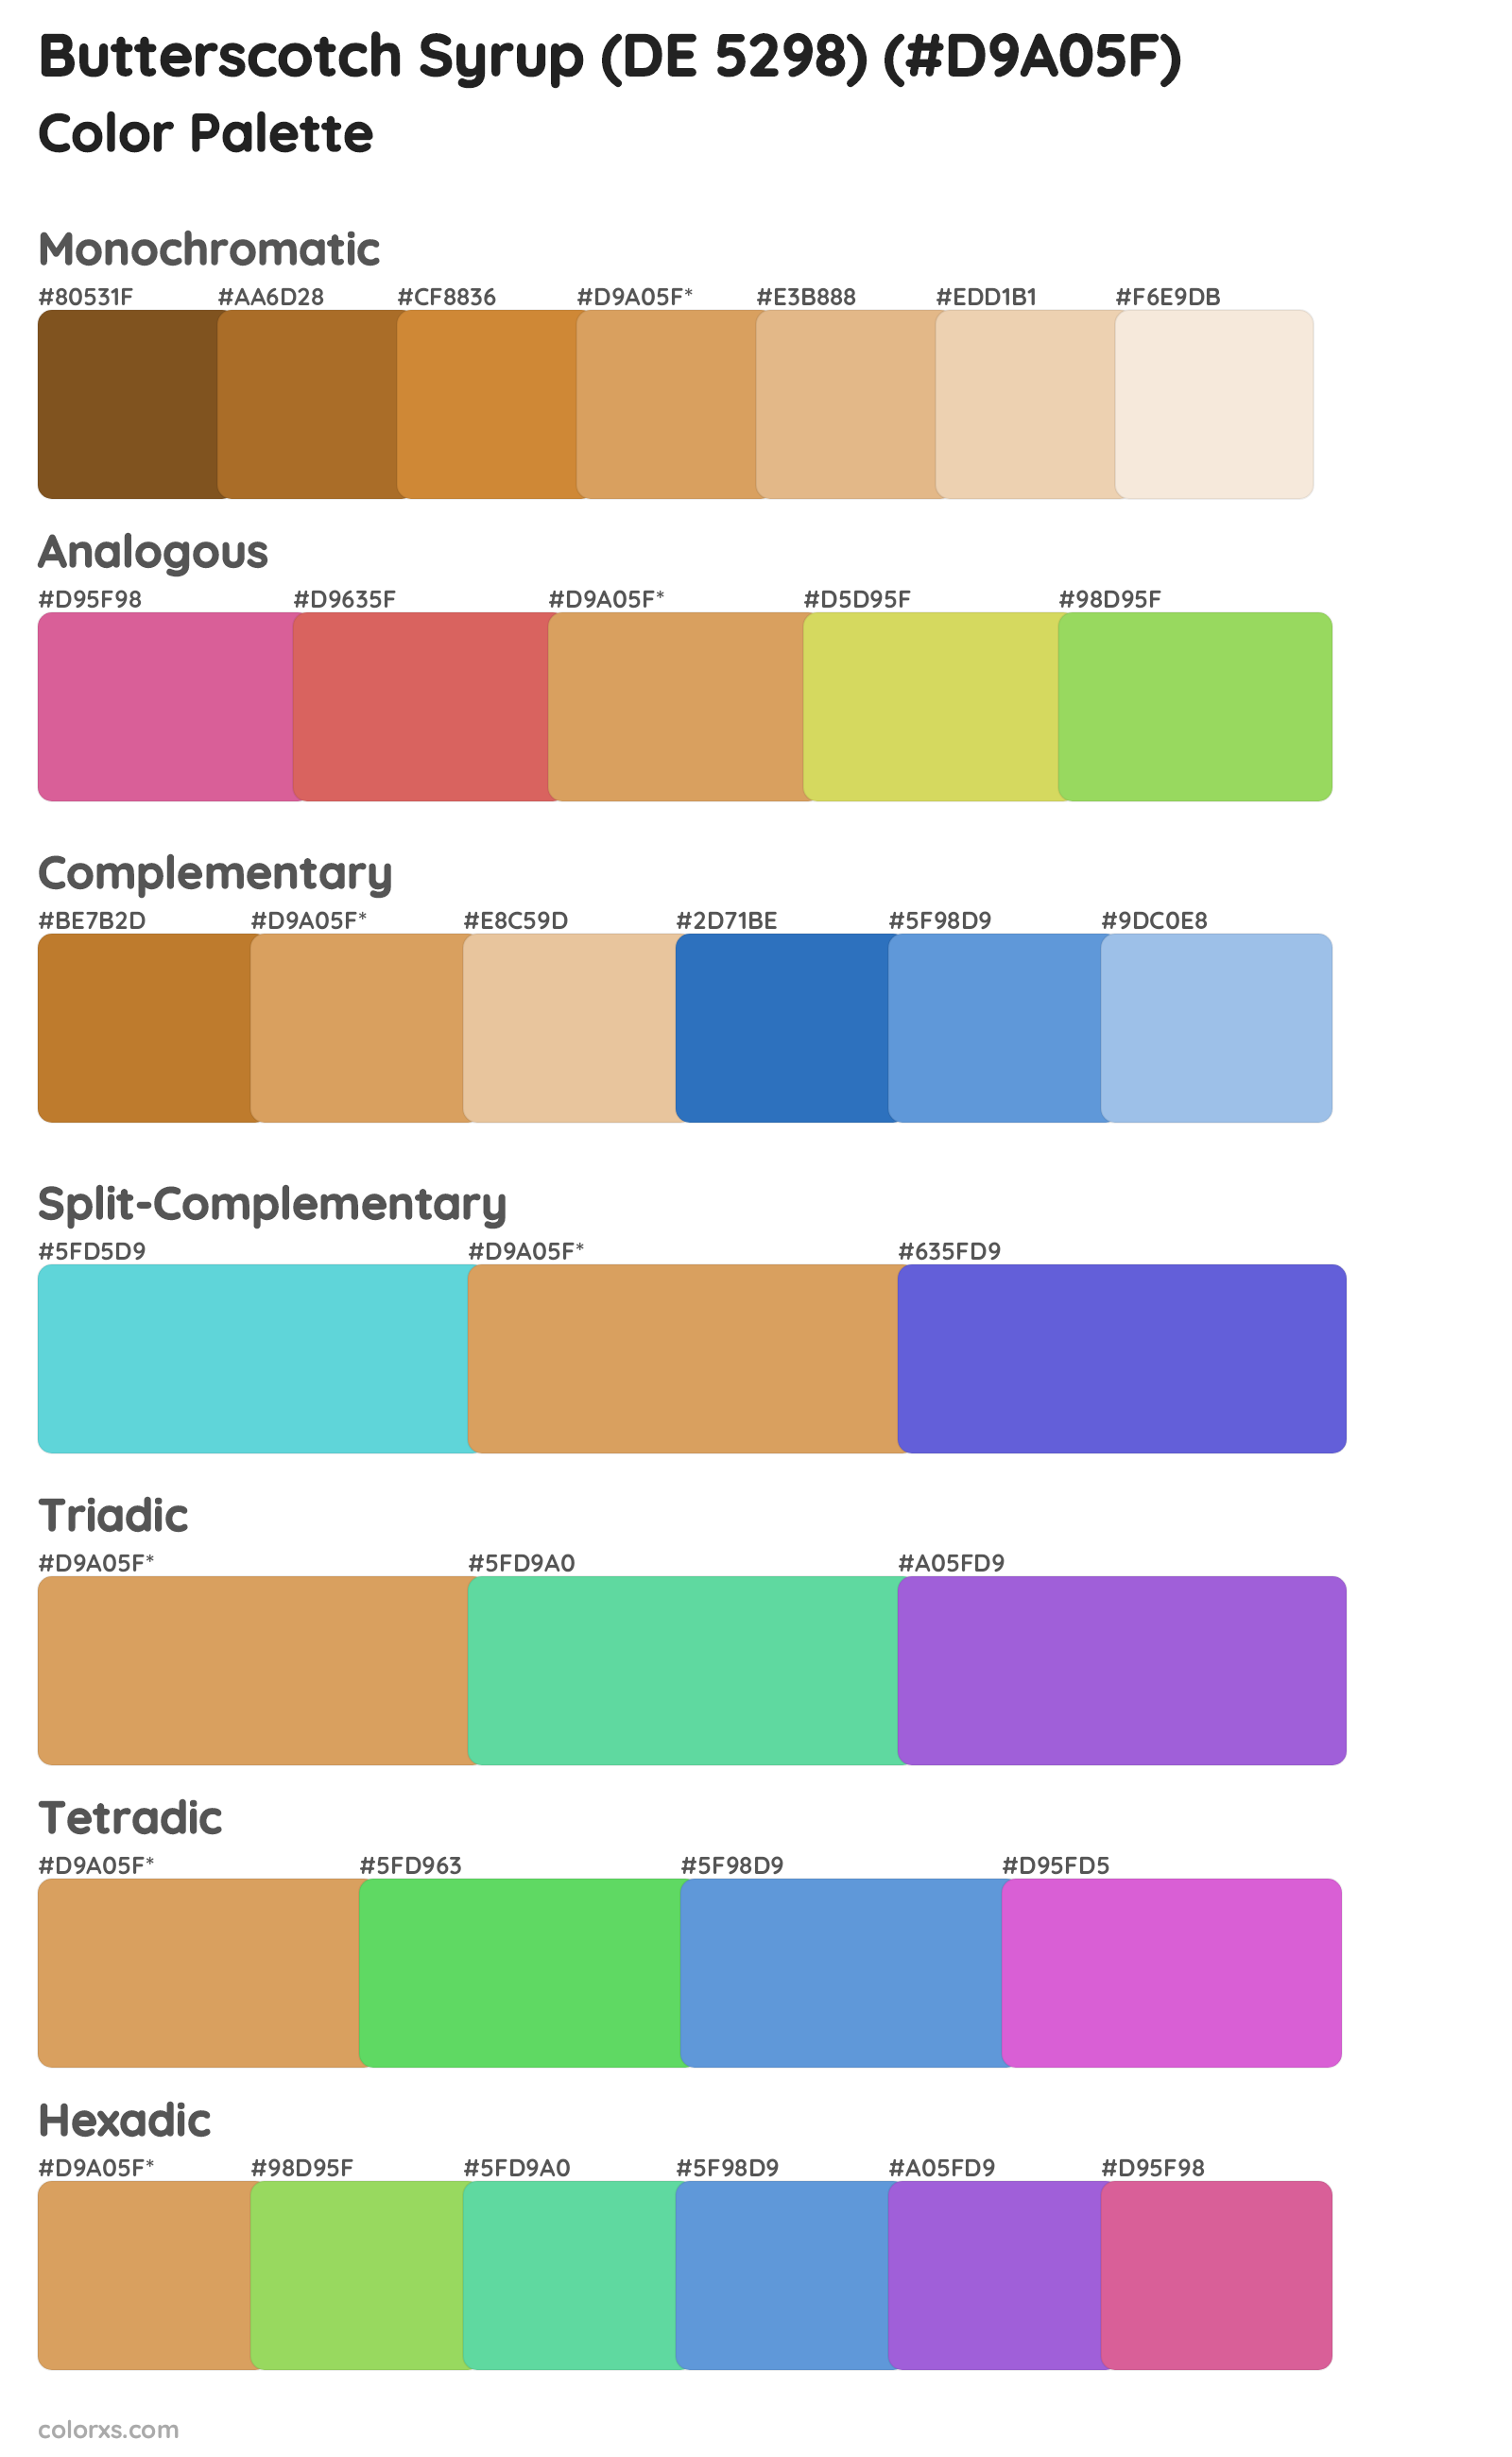 Butterscotch Syrup (DE 5298) Color Scheme Palettes